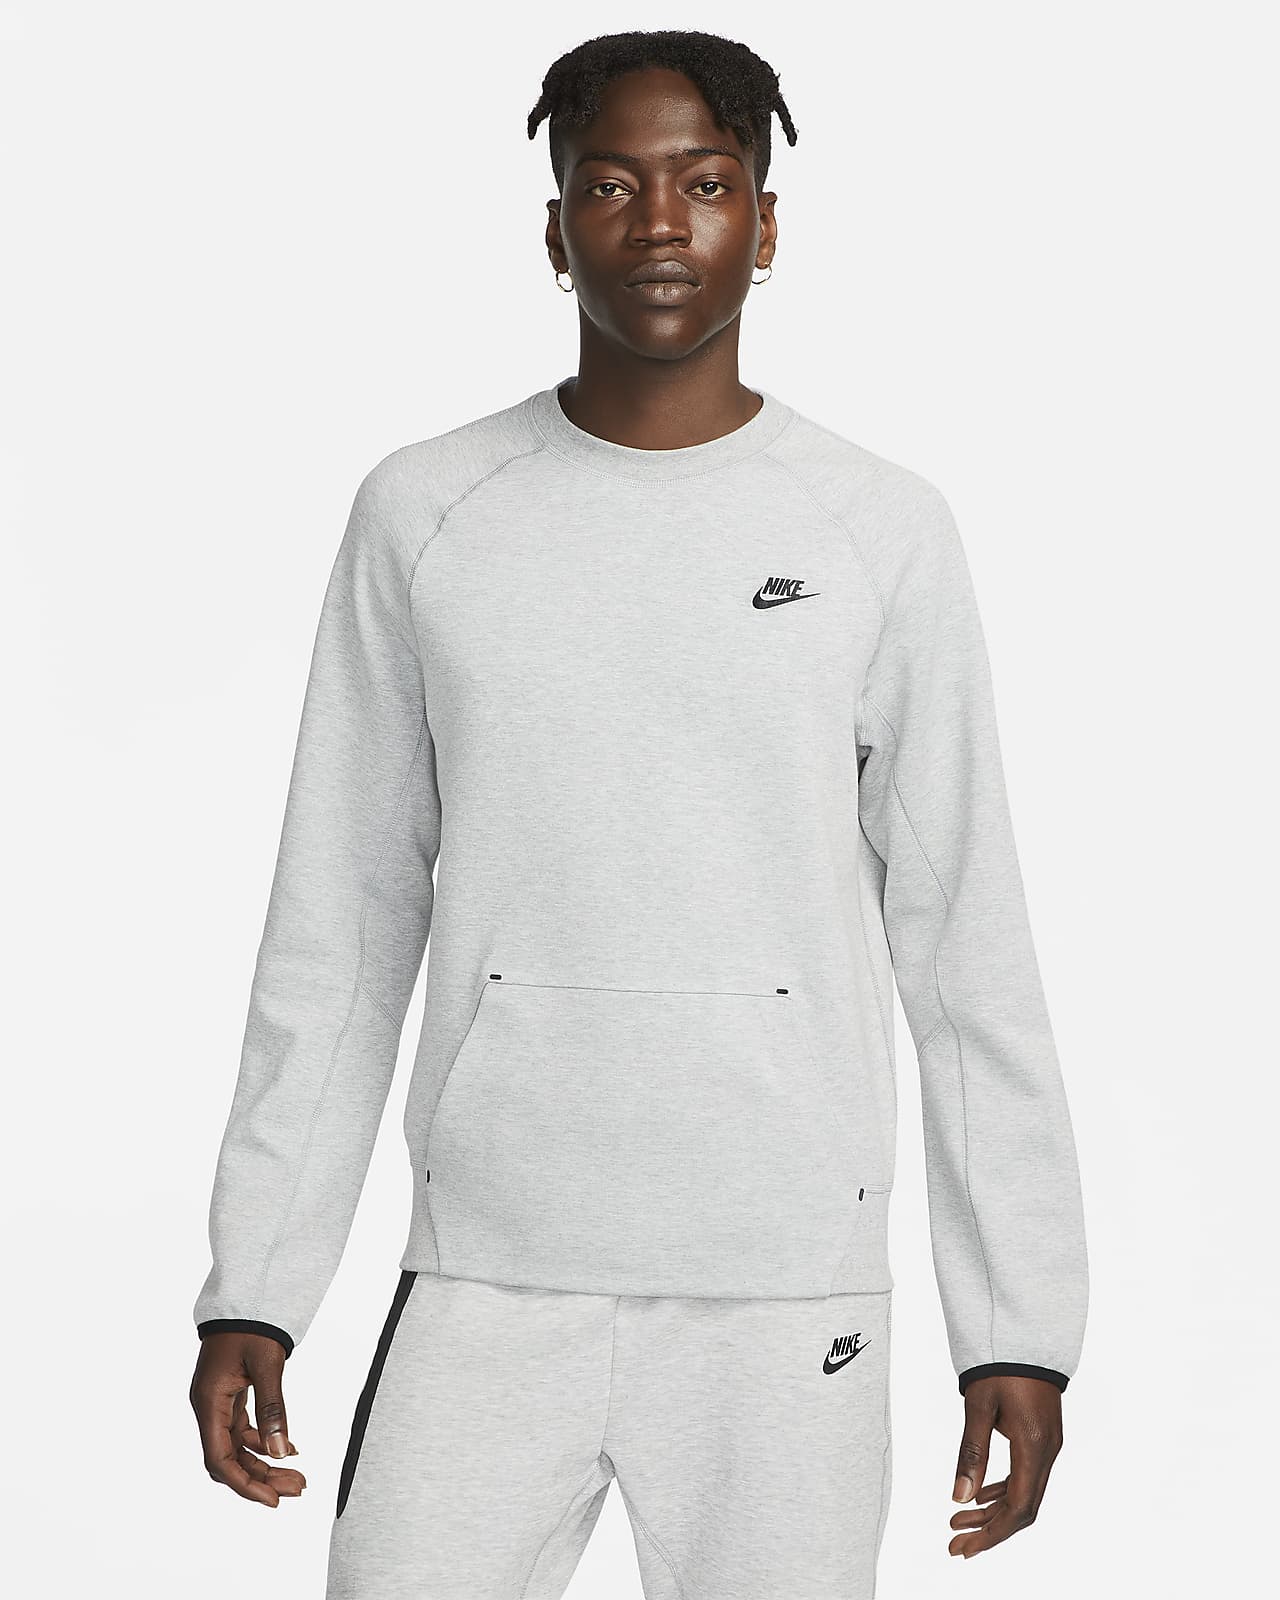 Nike Sportswear Tech Fleece OG Crew-Neck Sweatshirt.